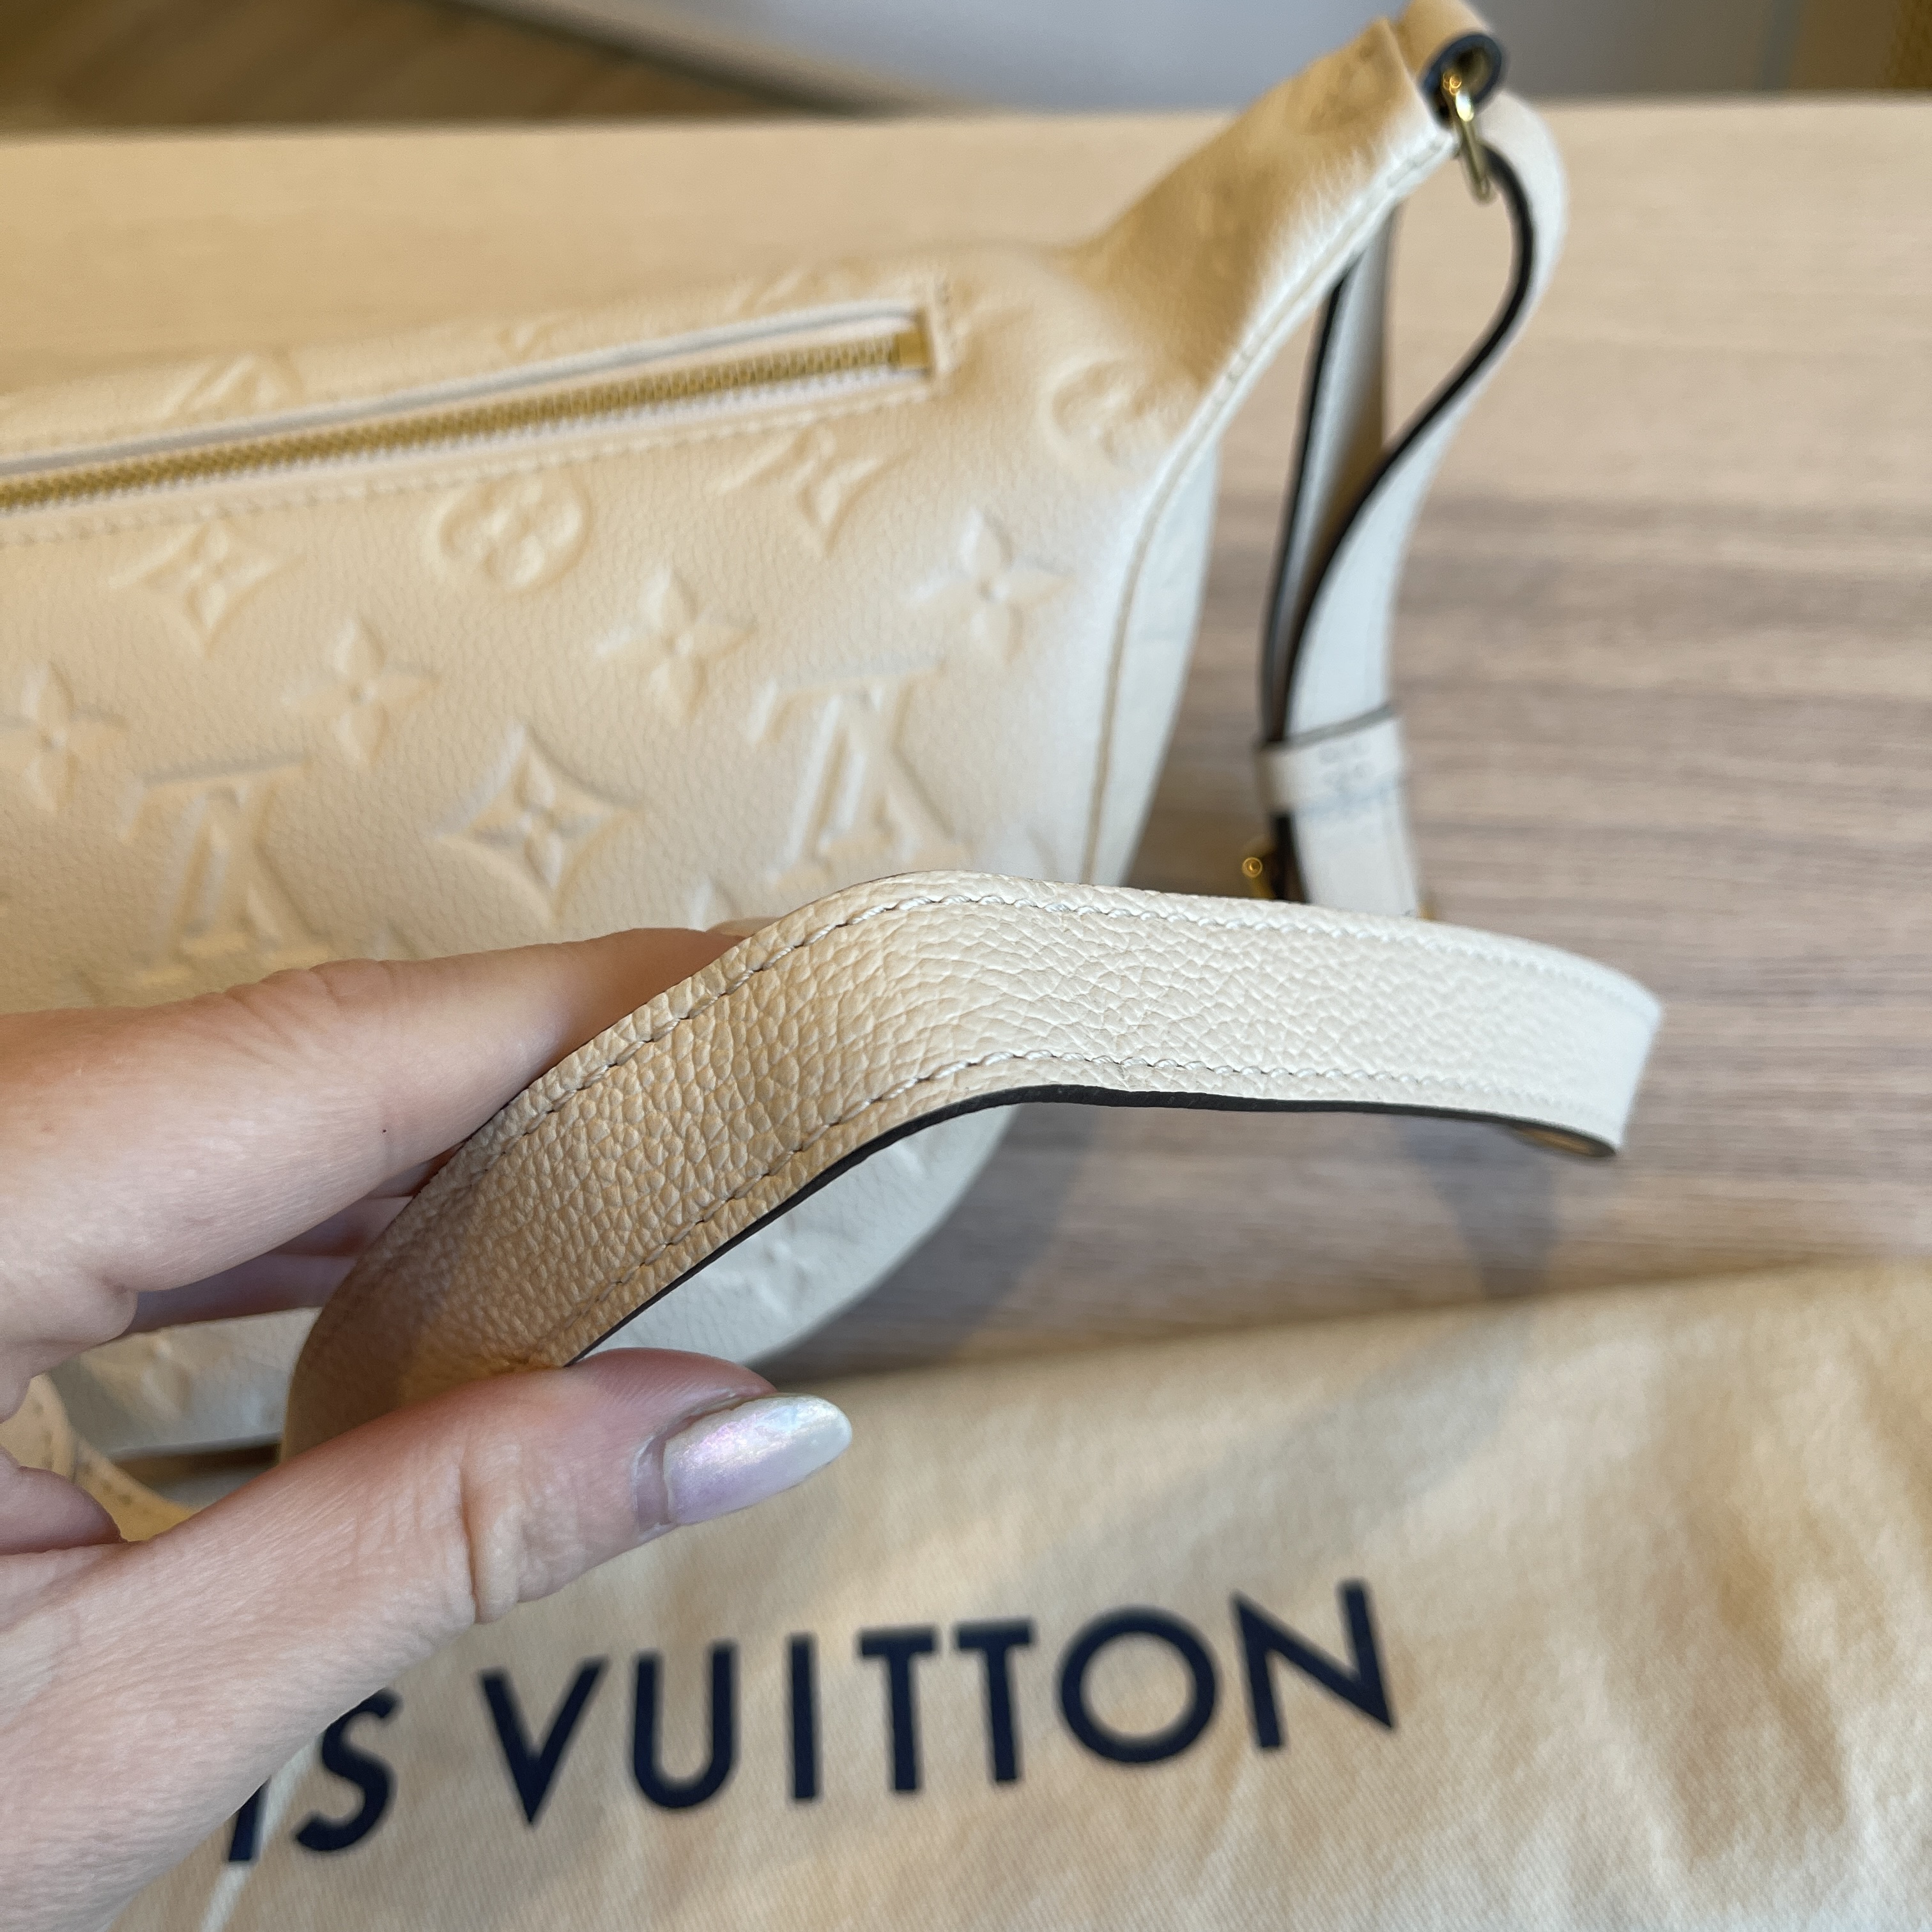 Louis Vuitton Empreinte BumBag Creme